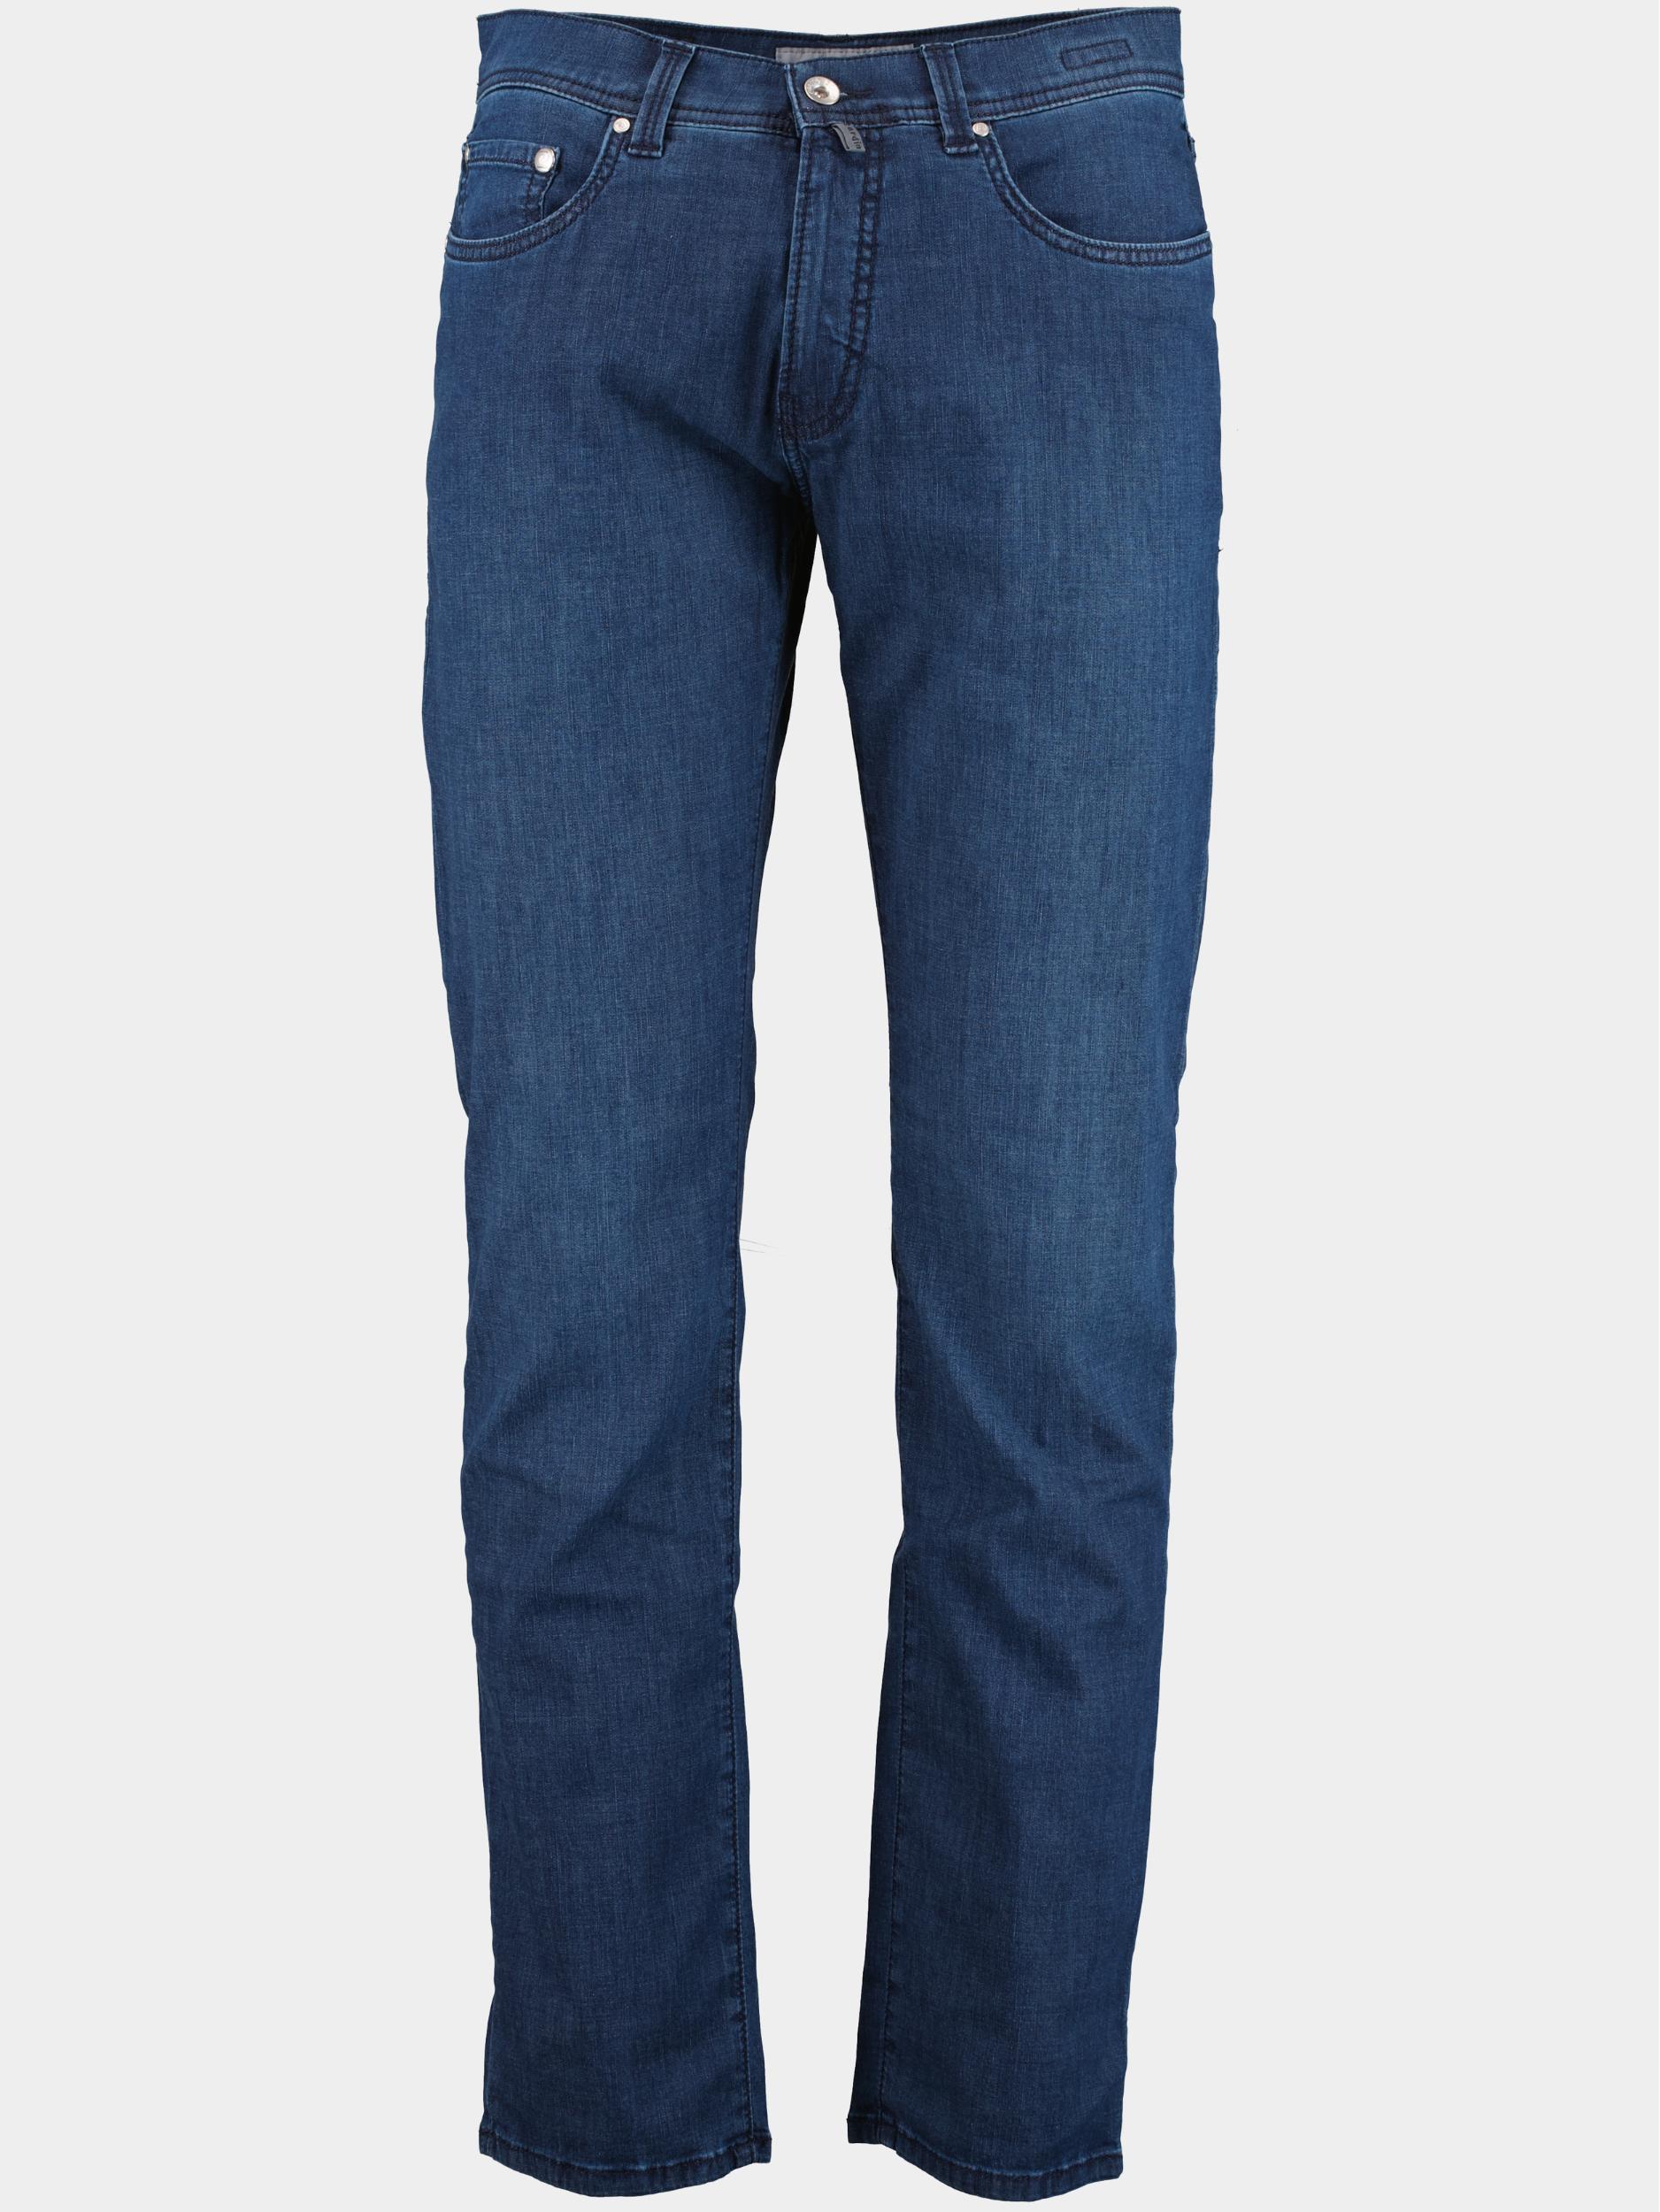 Pierre Cardin 5-Pocket Jeans Blauw  C7 34510.7730/6810